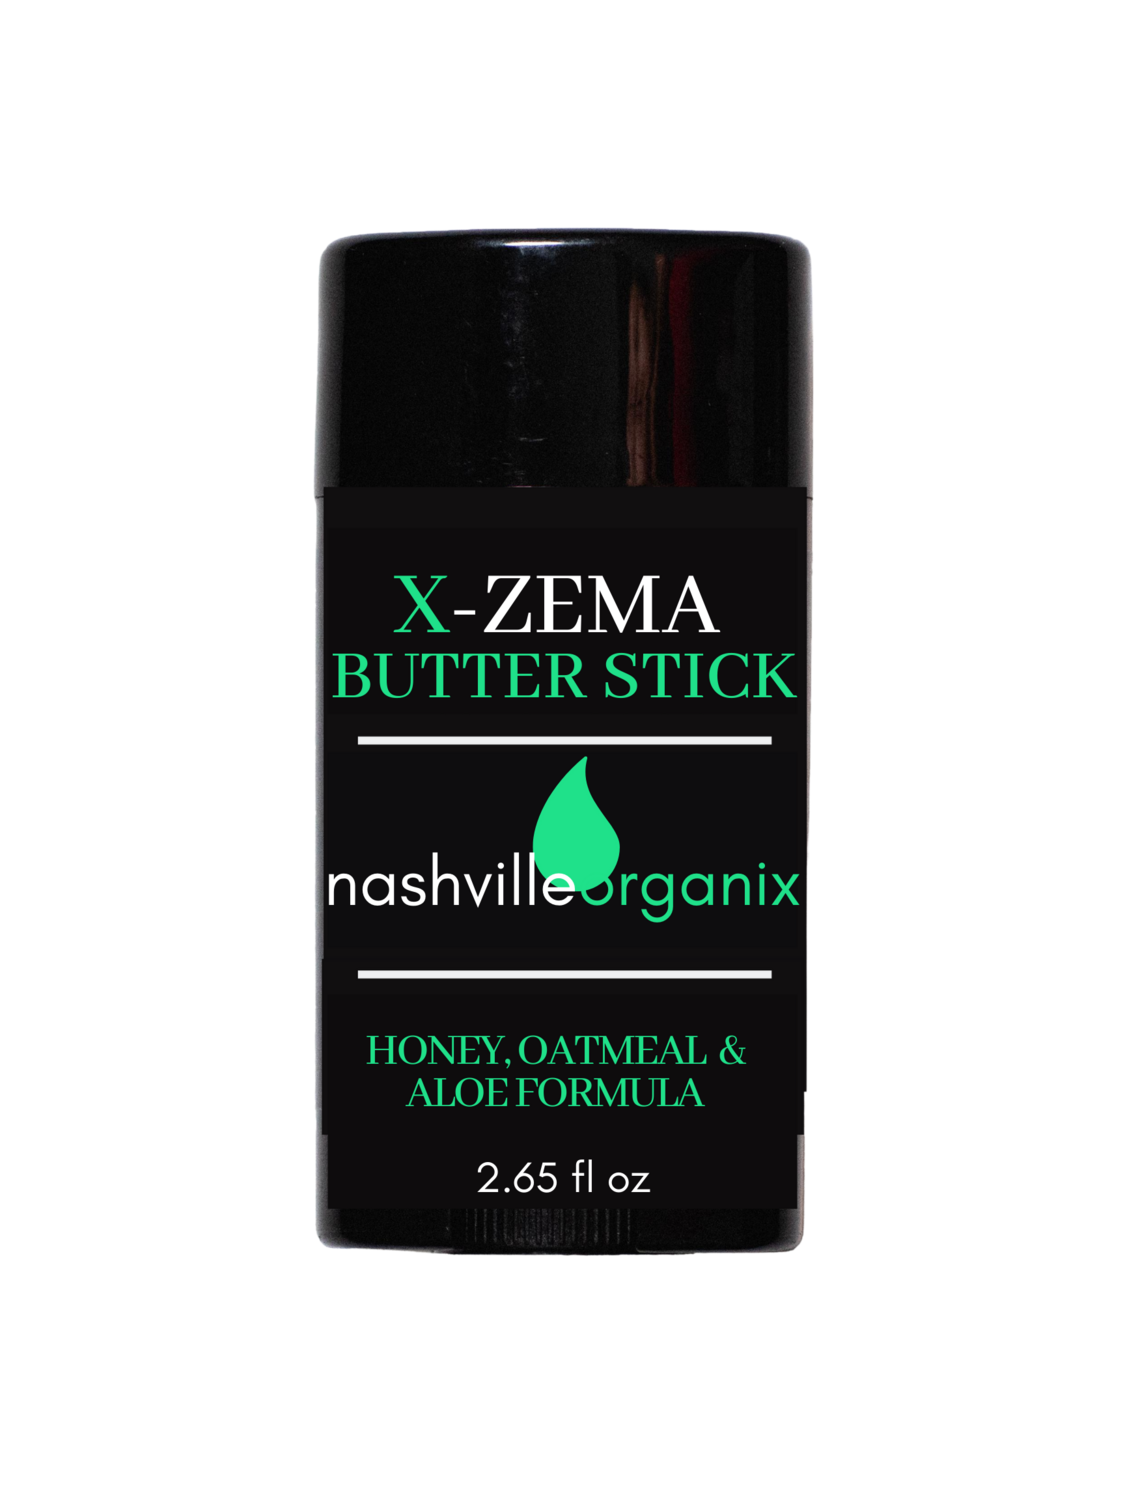 X-zema Butter Stick